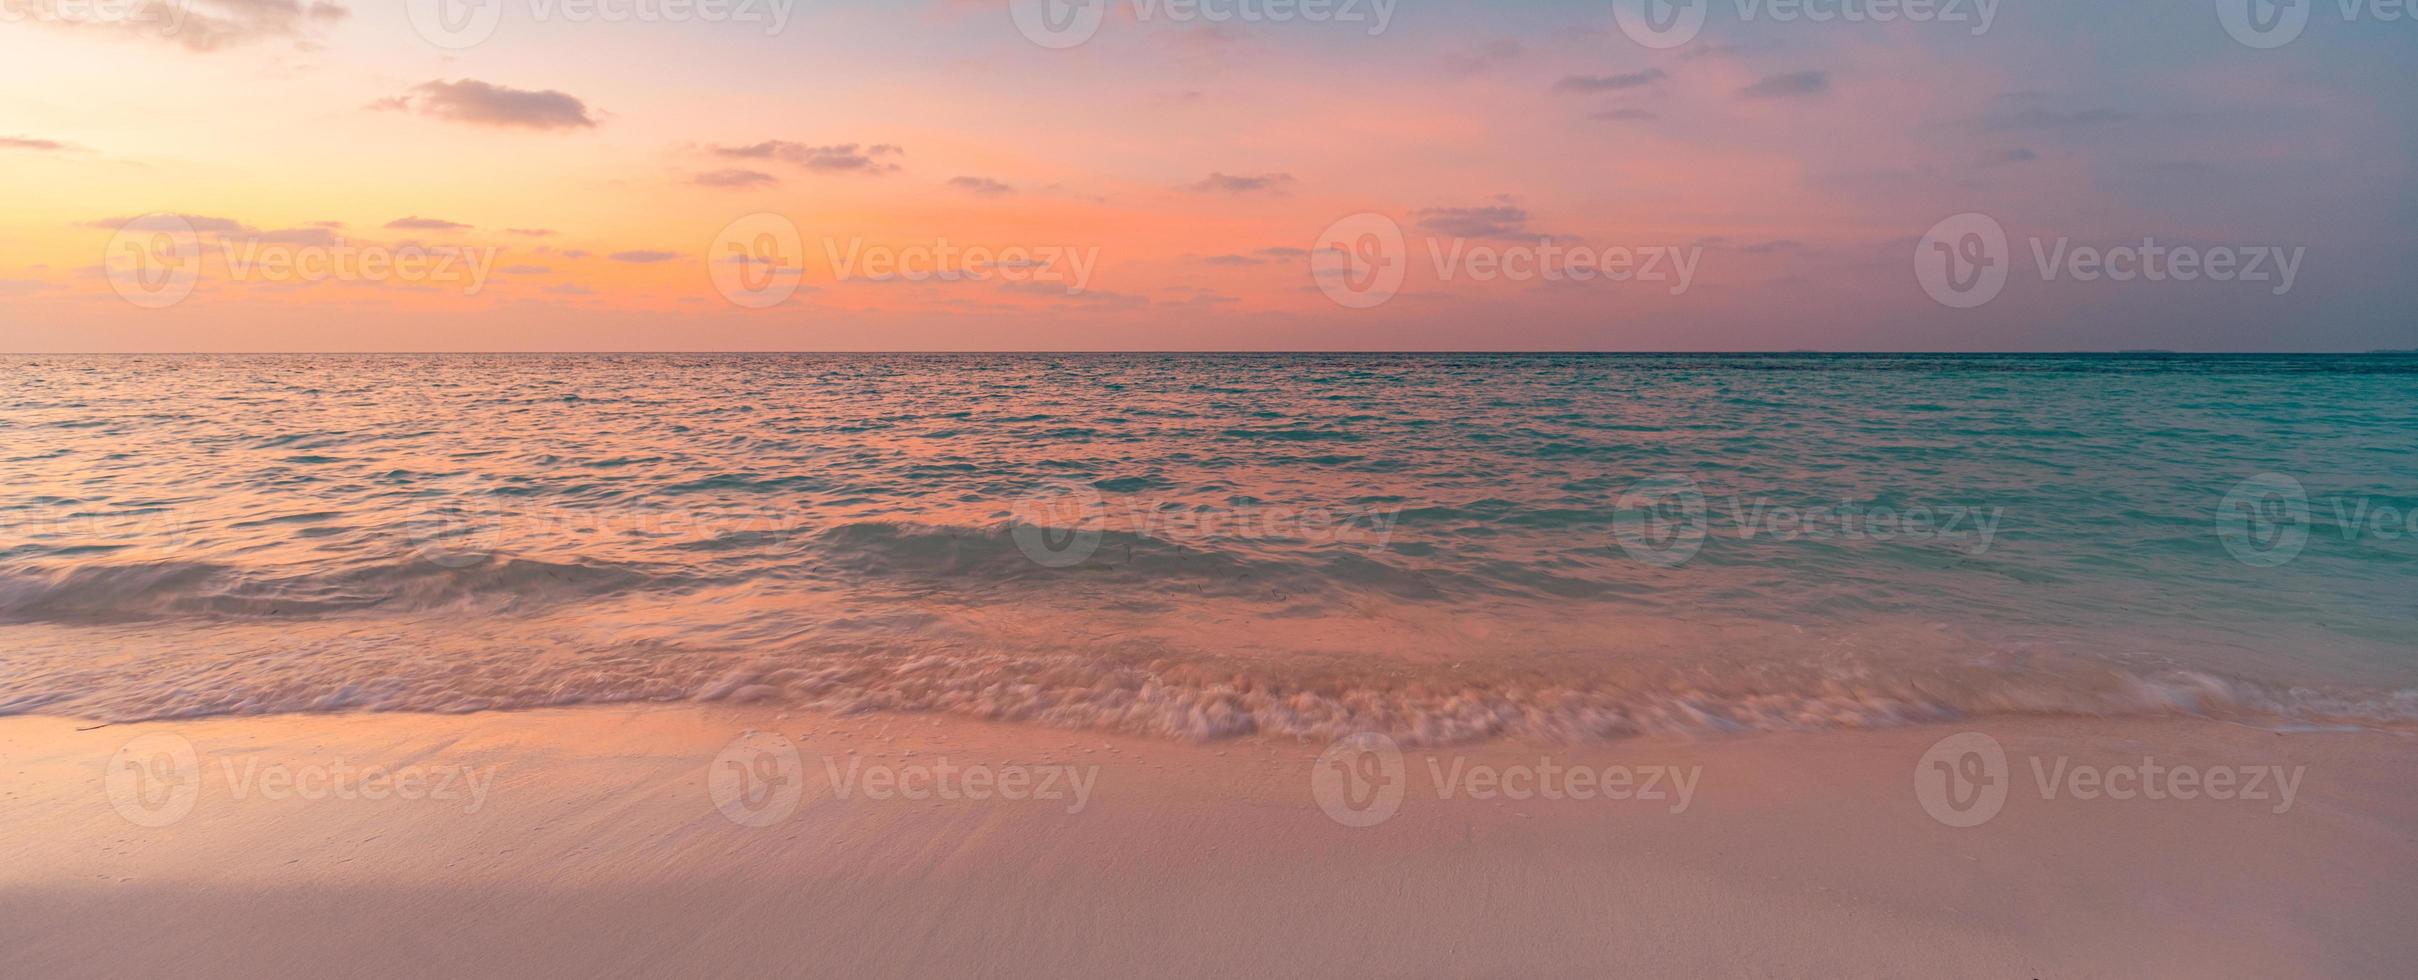 primer plano de la playa de arena de mar. paisaje panorámico de la playa. inspirar el horizonte del paisaje marino de la playa tropical. cielo de puesta de sol de sueño dorado, calma, tranquilidad, sol relajante, olas de la costa de verano. banner de vacaciones de viajes de vacaciones foto